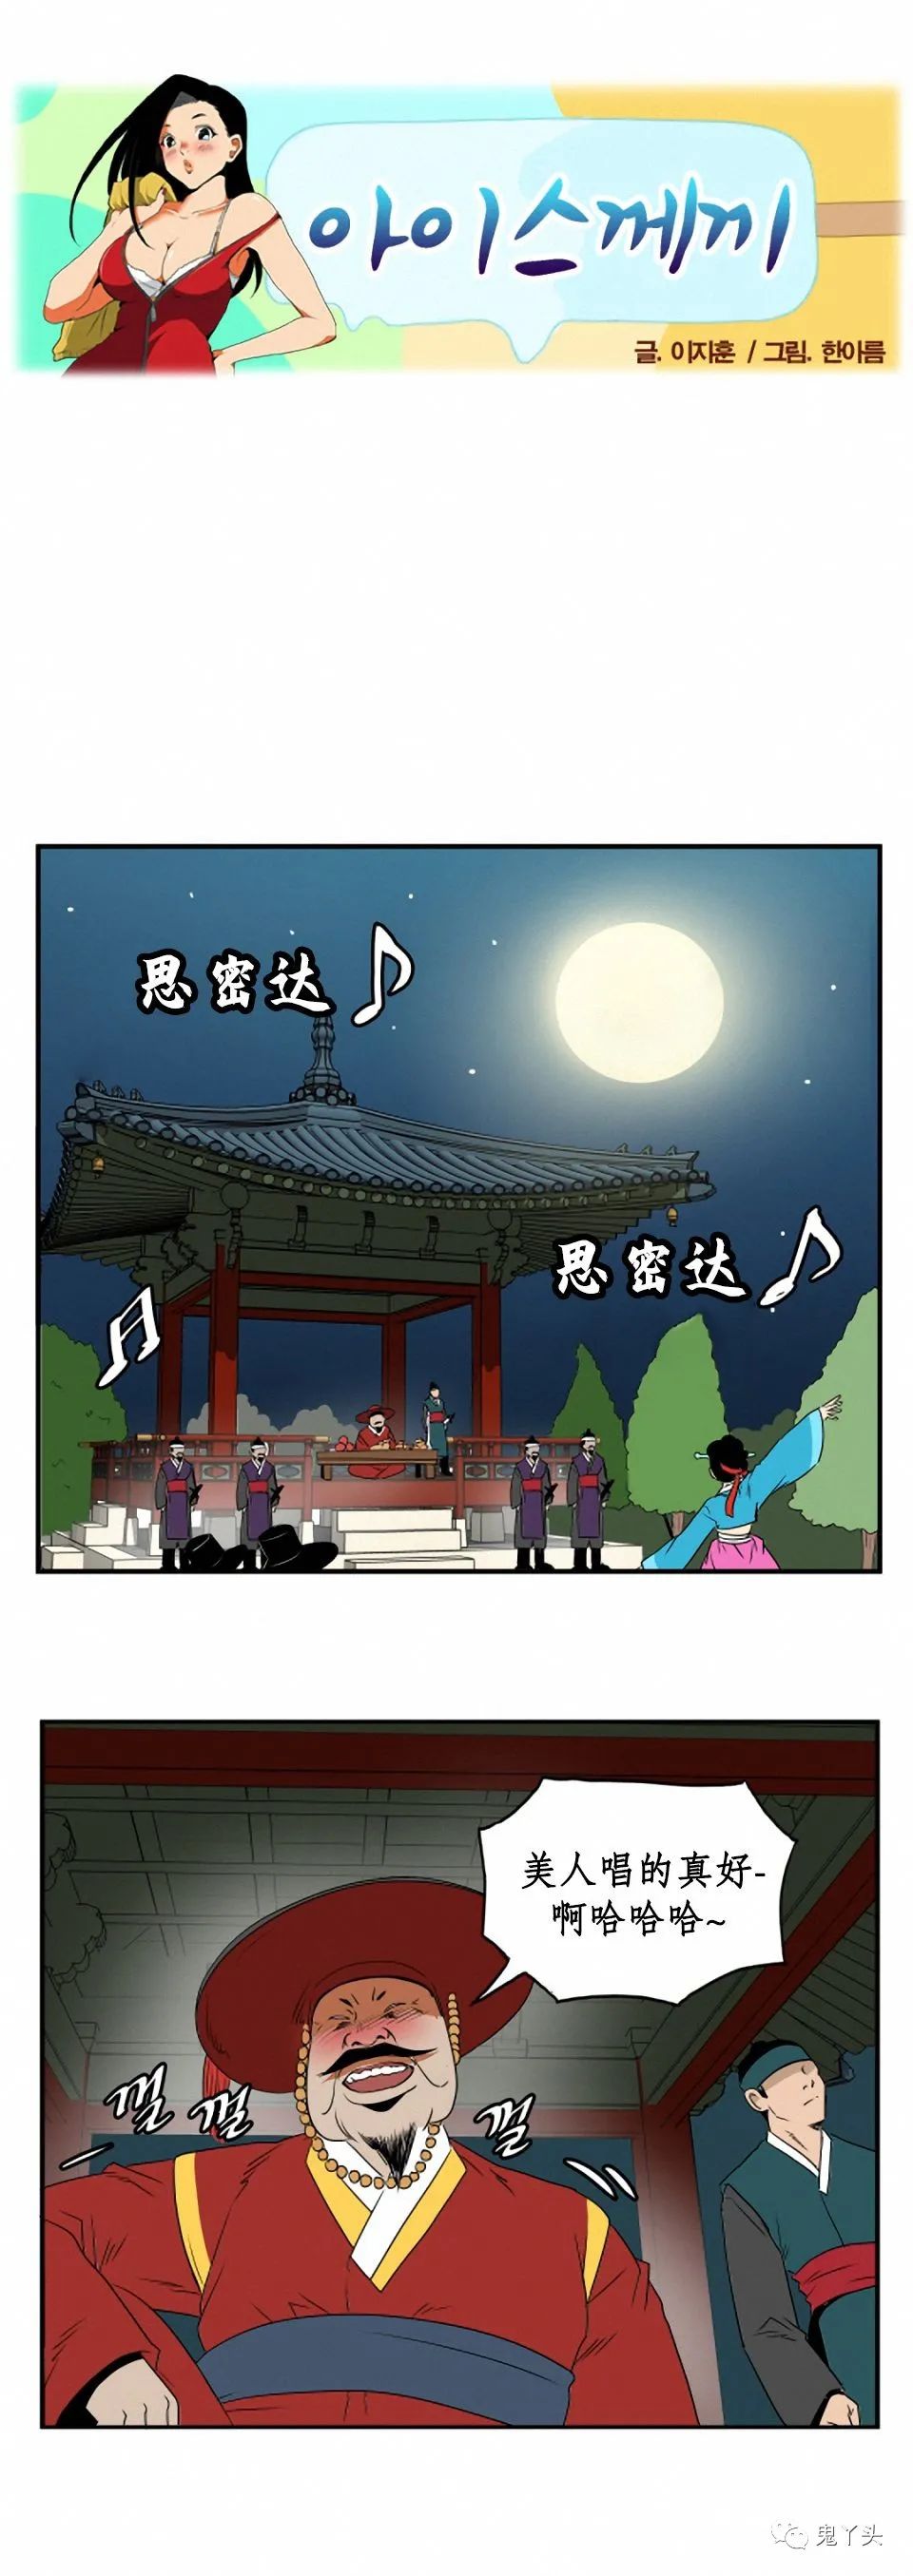 韩国内涵漫画《有刺客》,搞笑漫画小学生表